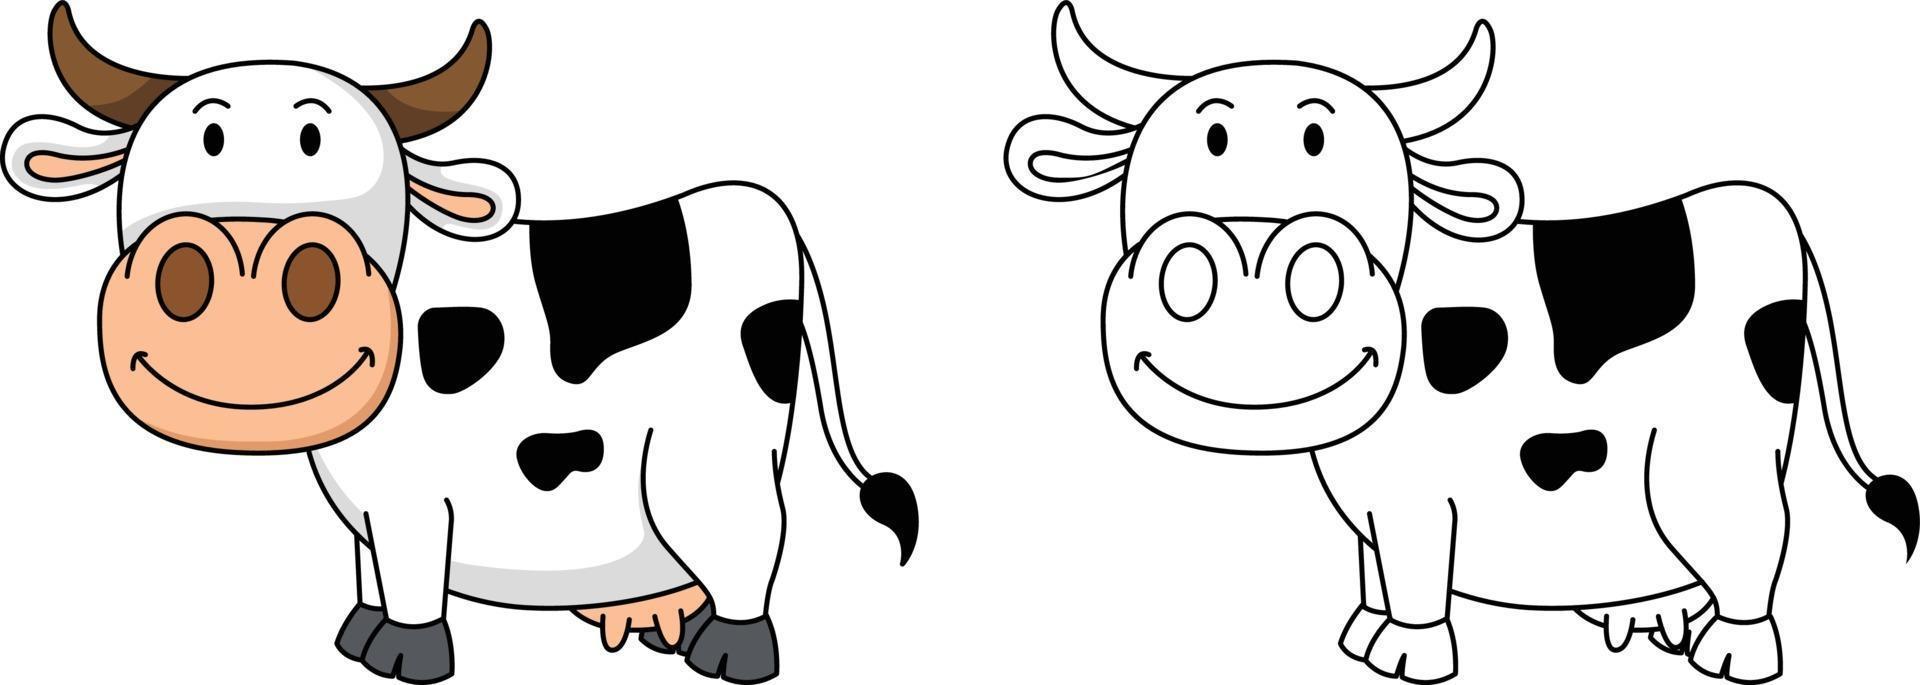 ilustração de livro de colorir educacional - vaca vetor